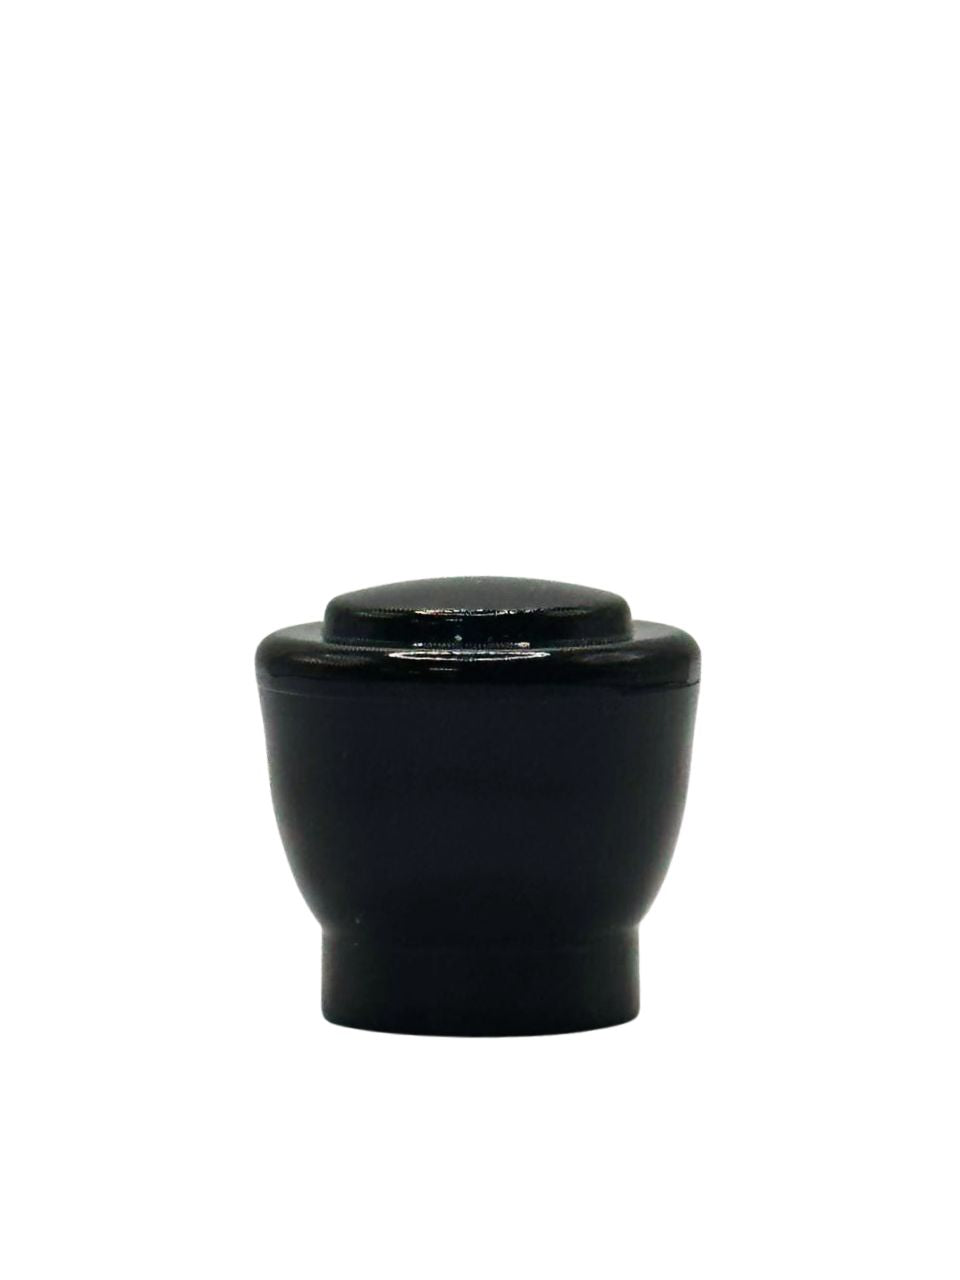 CP011 - PLASTIC BLACK CAP